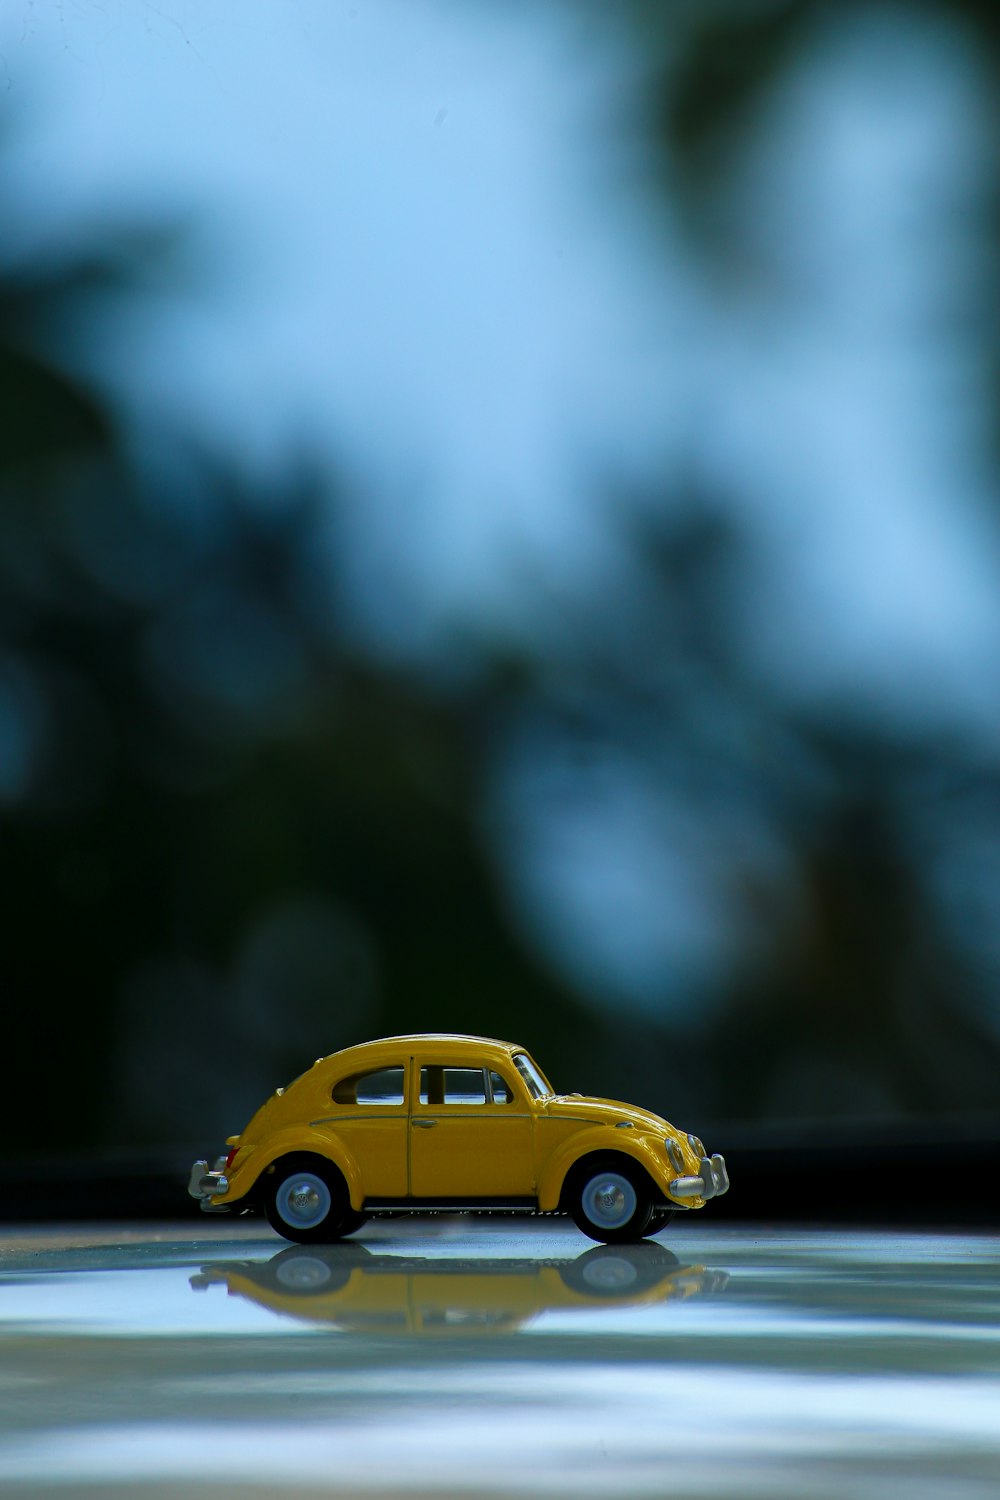 Volkswagen Coccinelle jaune sur route asphaltée noire avec lentille à bascule et décentrement